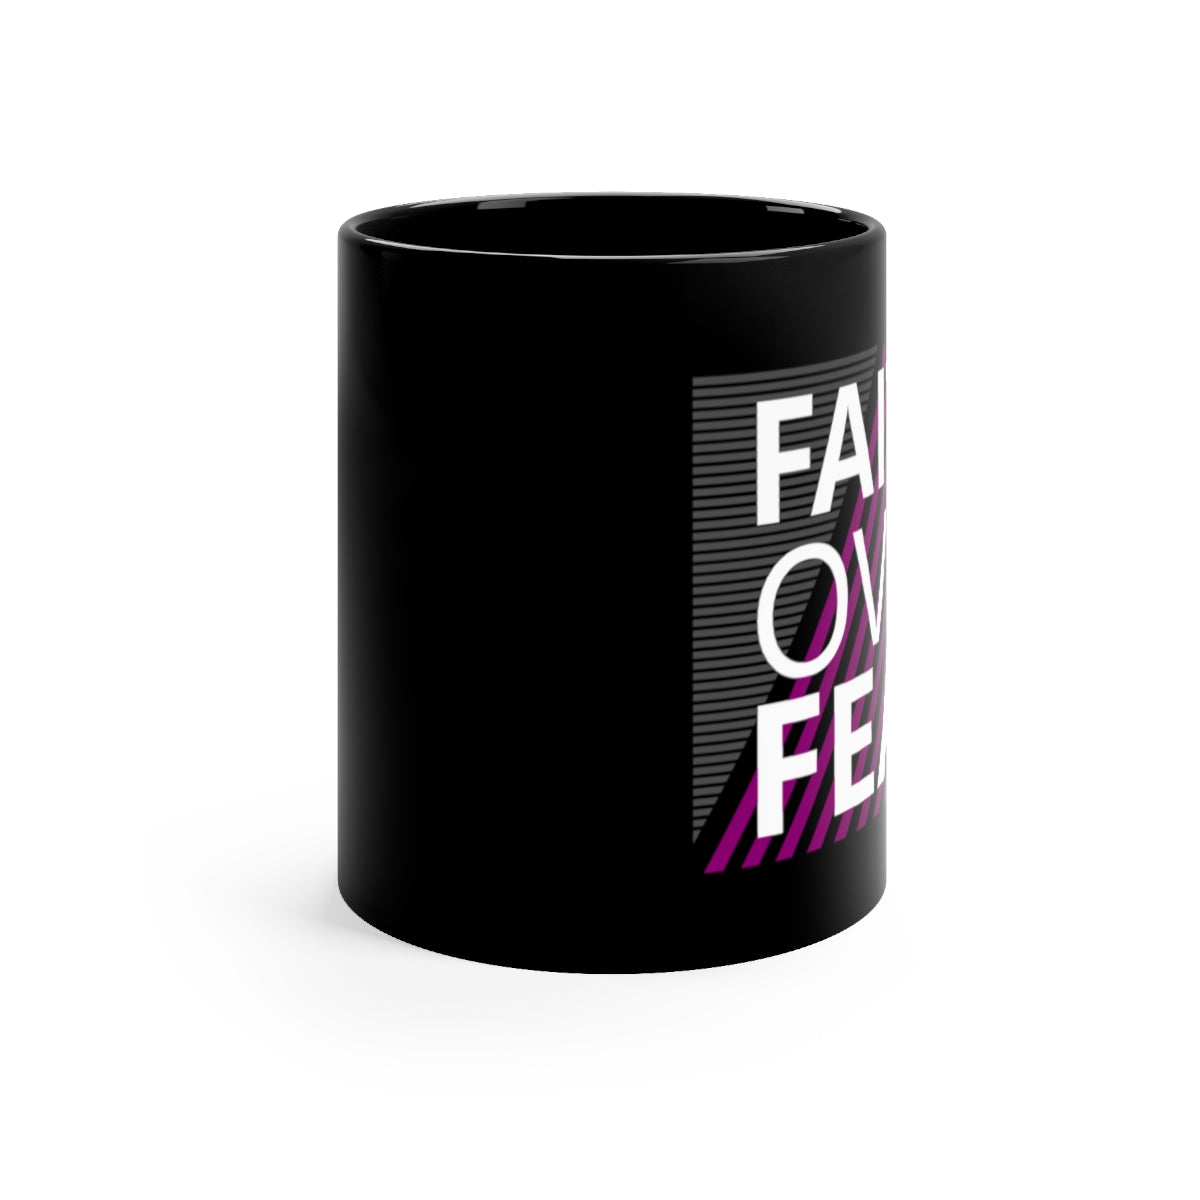 Faith Over Fear Black Mug